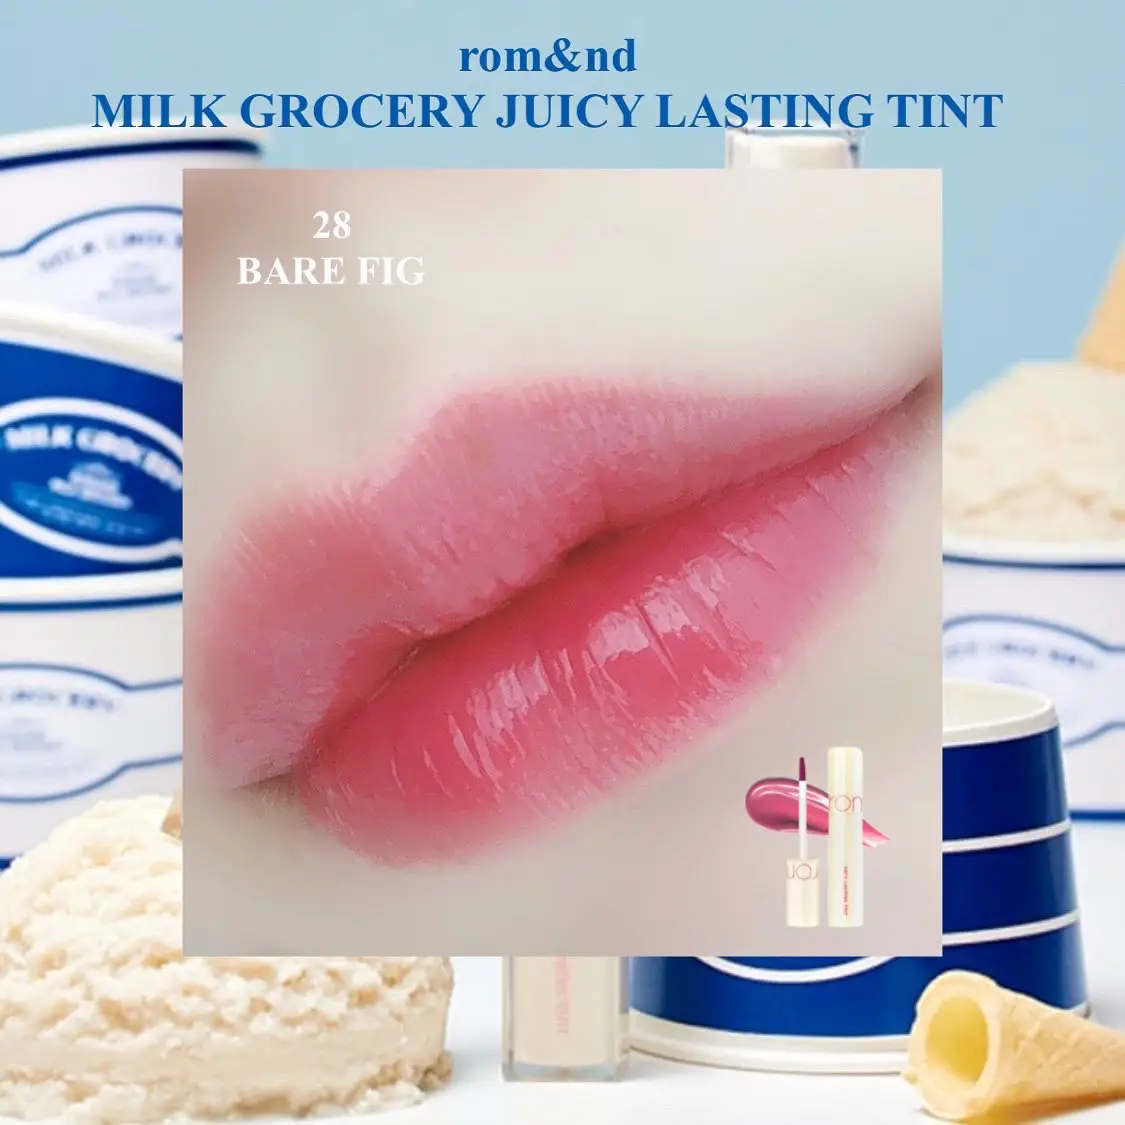 Rom&nd Juicy Lasting Tint Milk Grocery Series